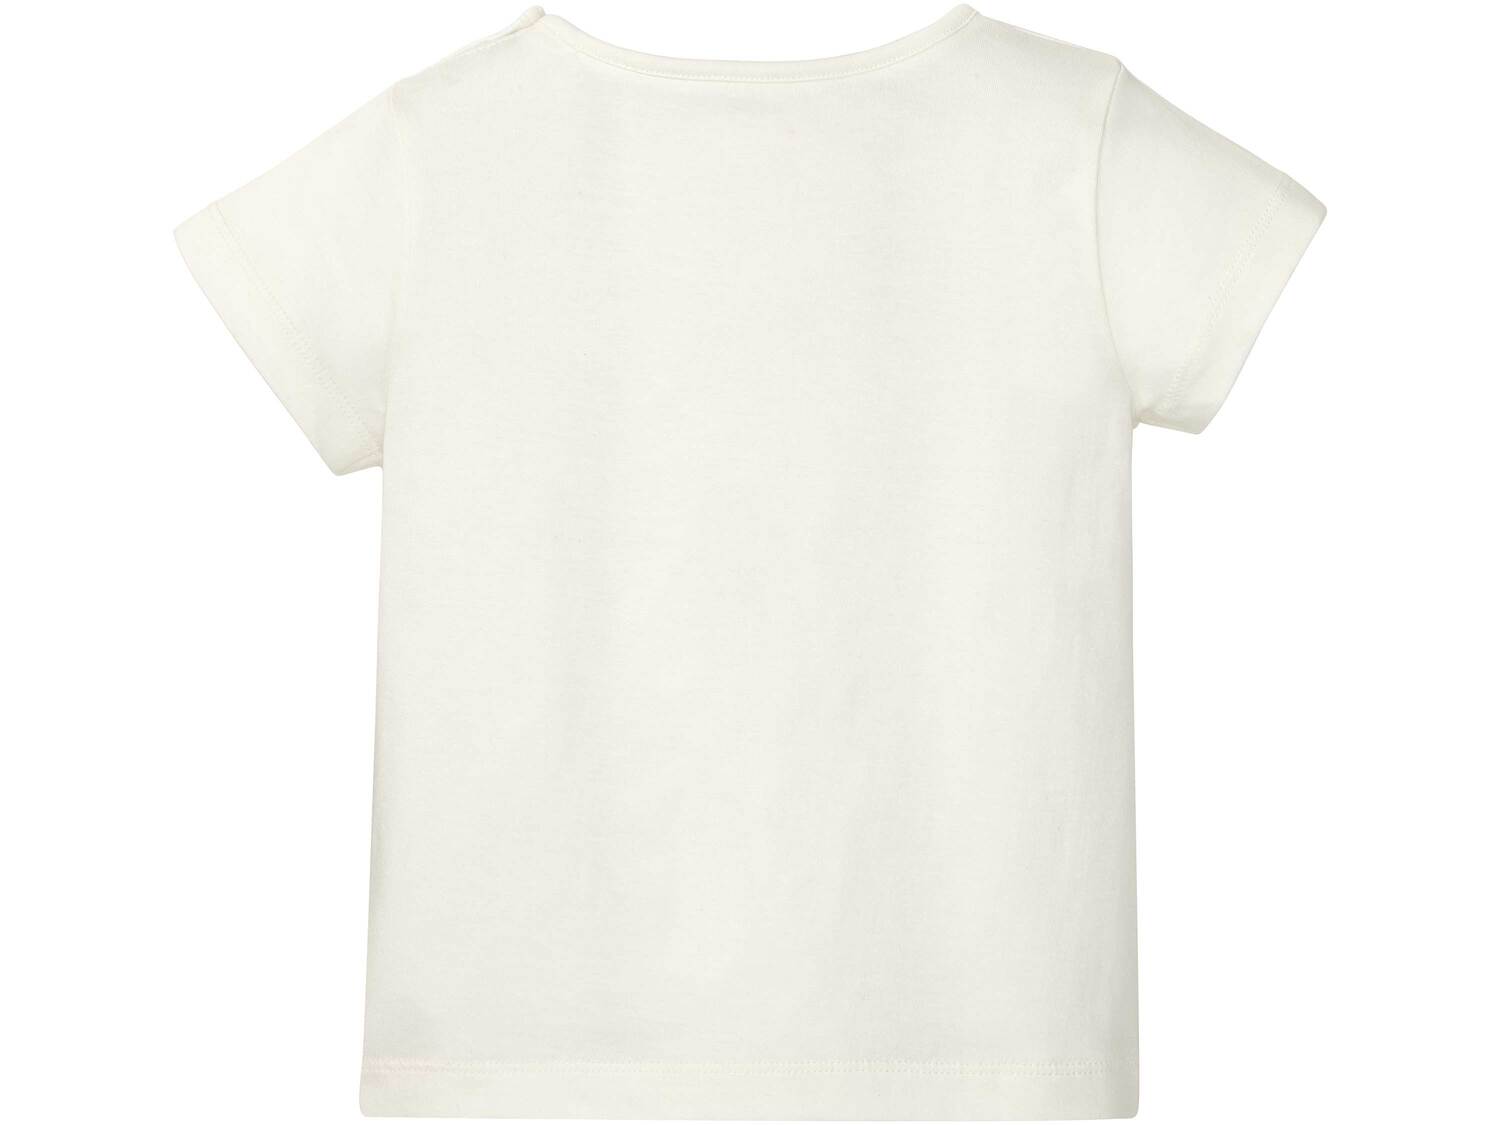 Koszulka dziewczęca Lupilu, cena 14,99 PLN 
- 100% bawełny
- rozmiary: 86-116
Dostępne ...